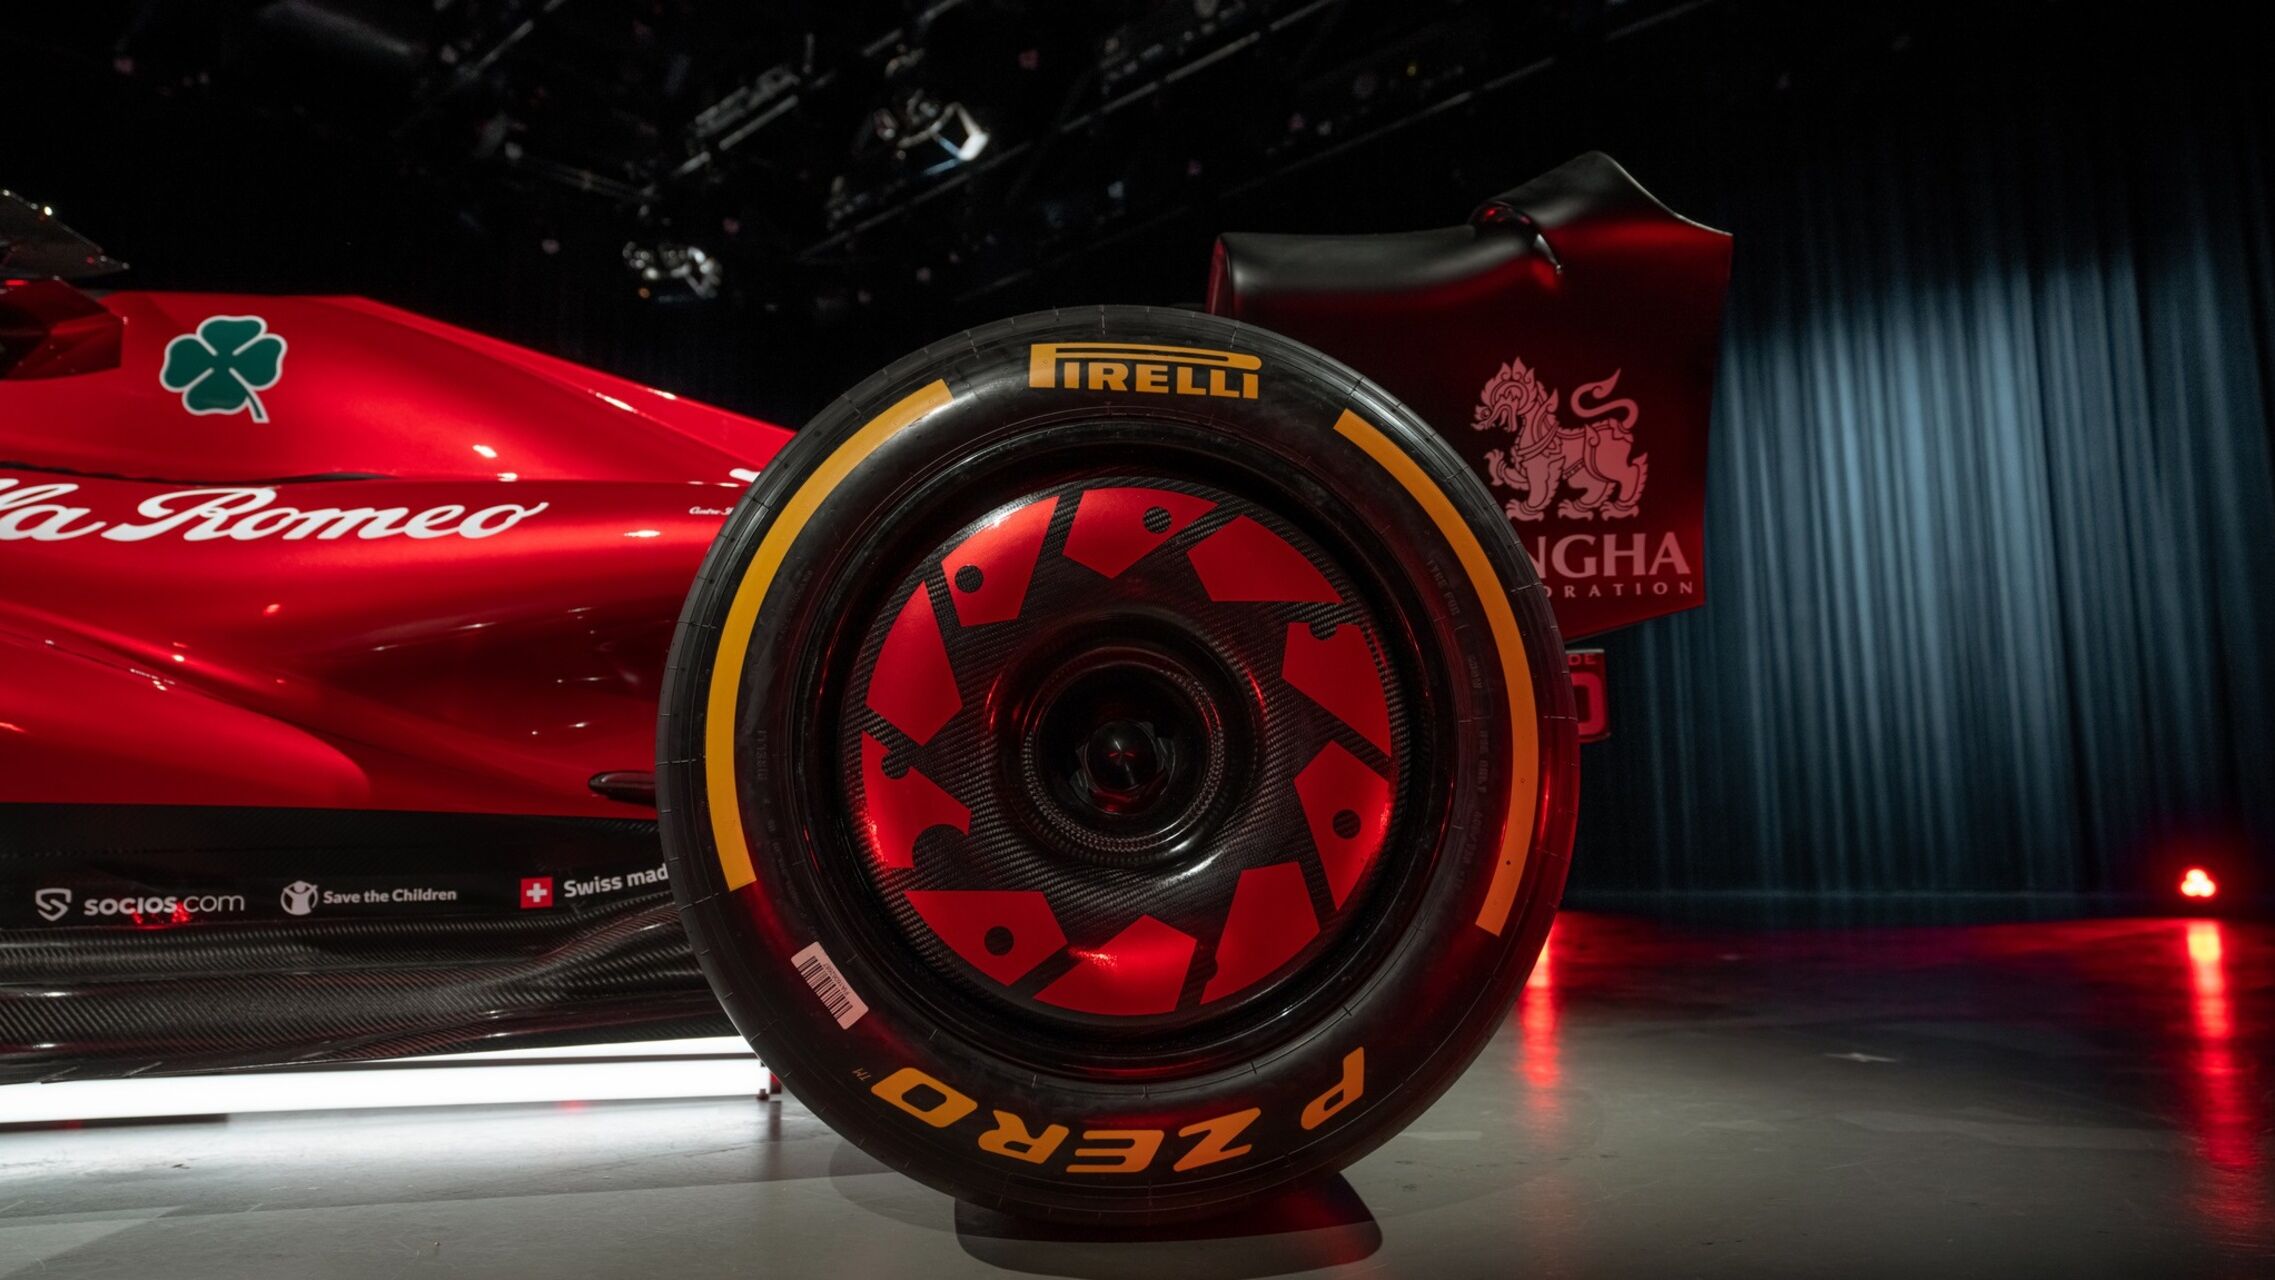 Искусственный интеллект: технические настройки Alfa Romeo F1 Team Stake C43 были пересмотрены франко-немецким инженером Яном Моншо.